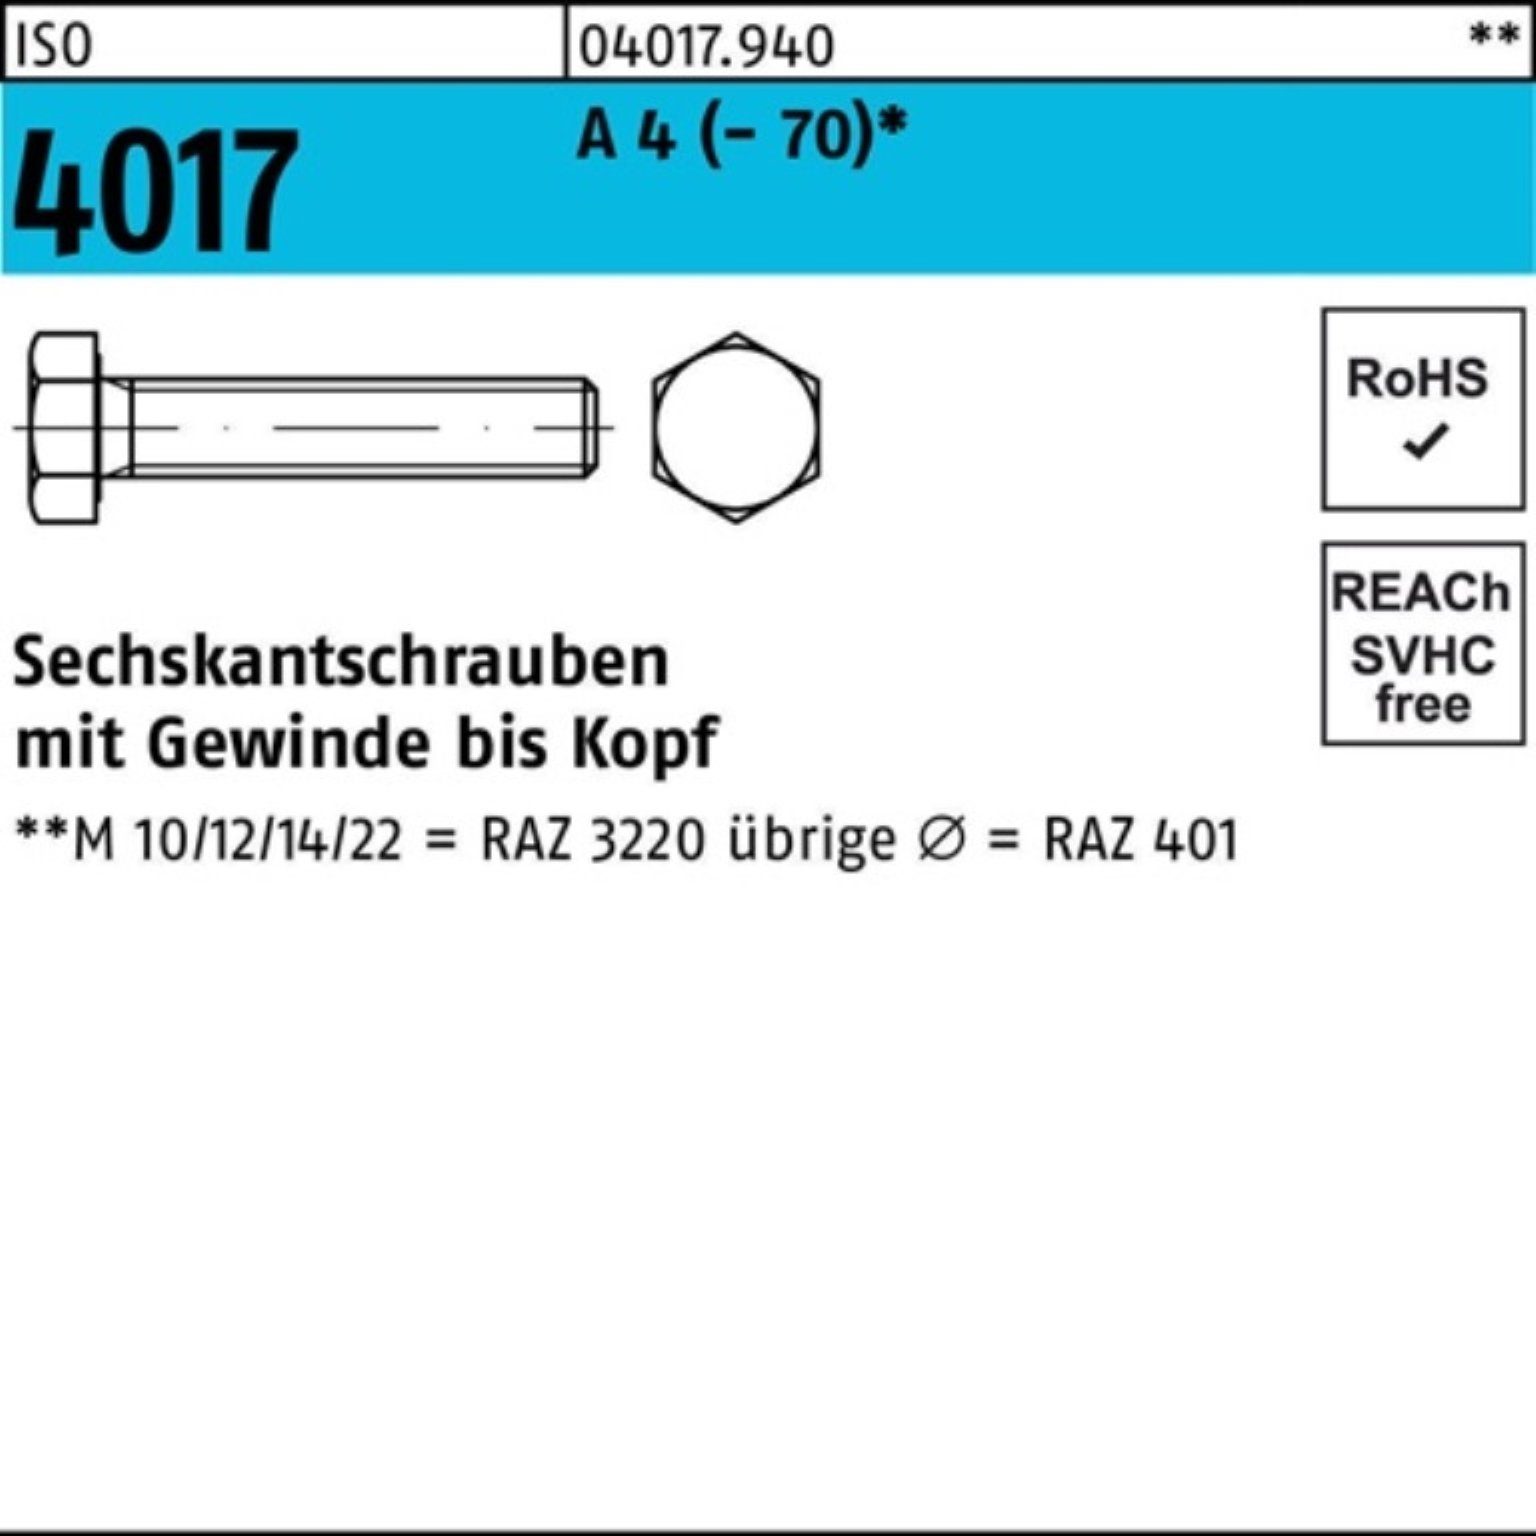 Bufab Sechskantschraube 200er Pack Sechskantschraube ISO 4017 VG M6x 40 A 4 (70) 200 Stück